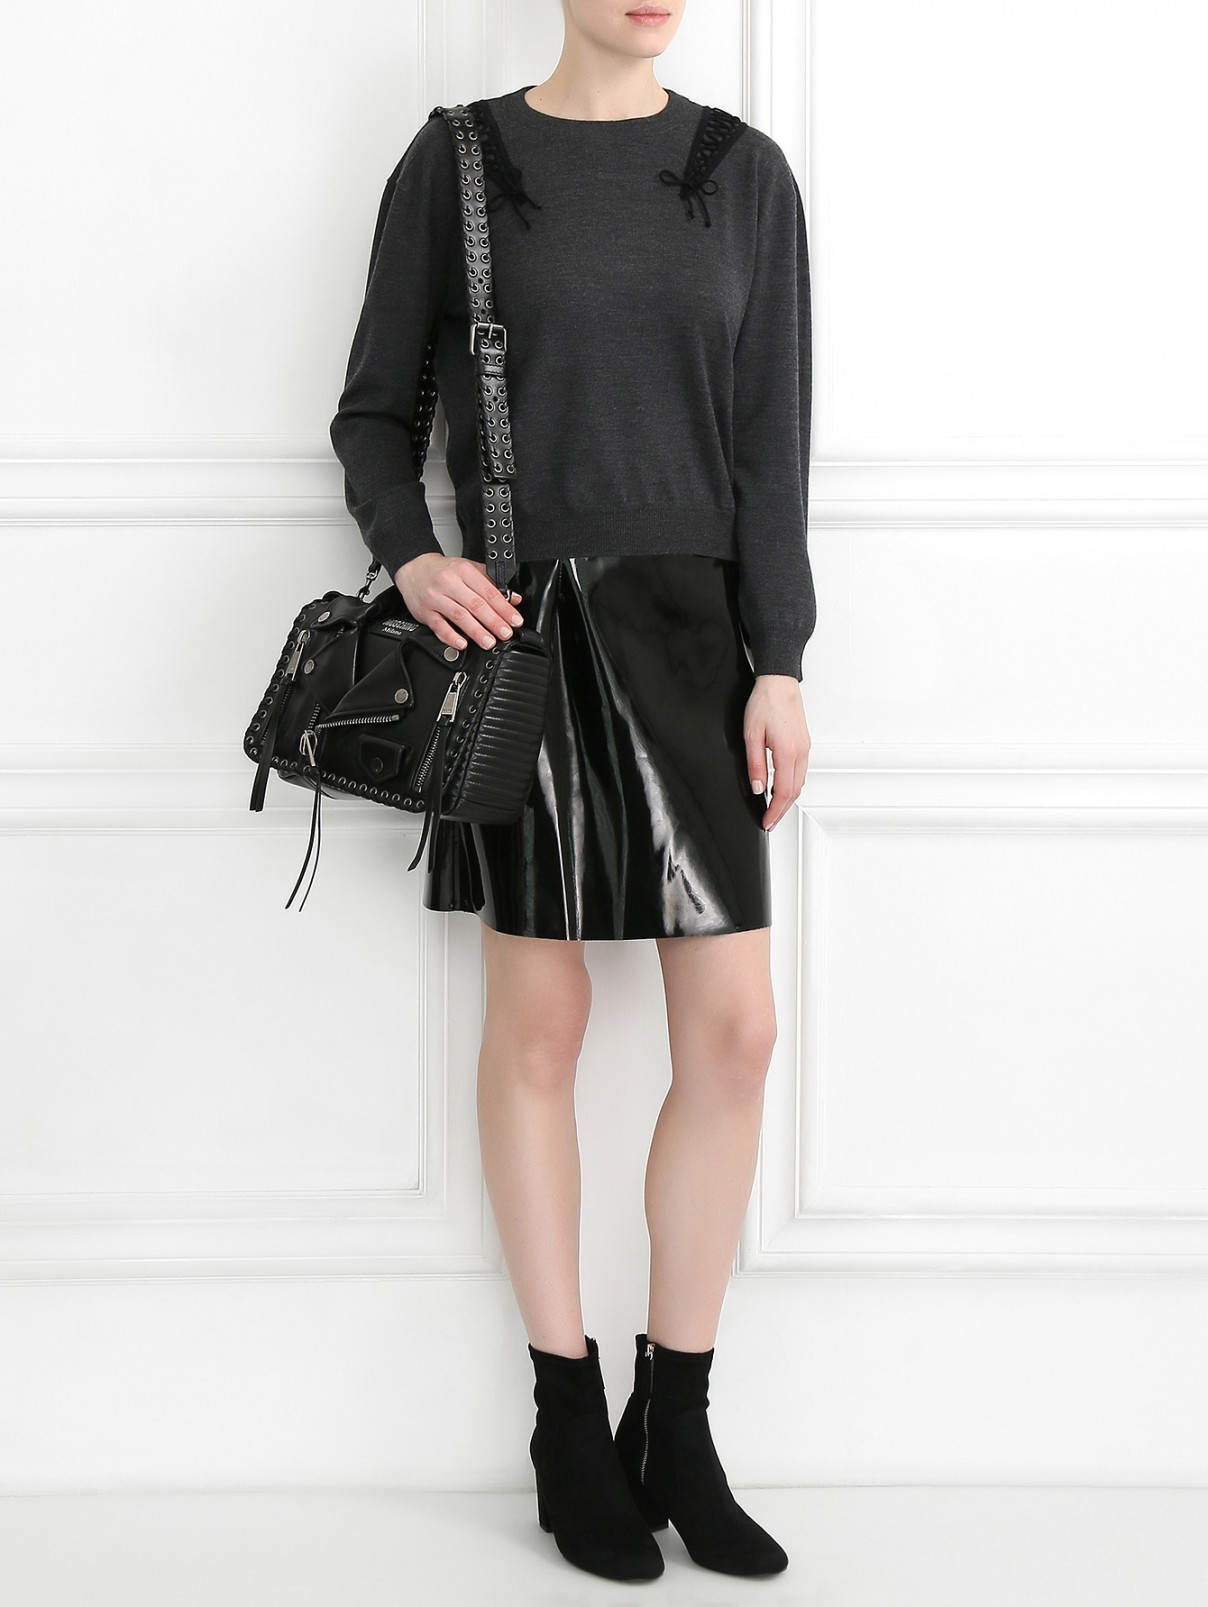 Джемпер из шерсти с декором Moschino Couture  –  Модель Общий вид  – Цвет:  Серый